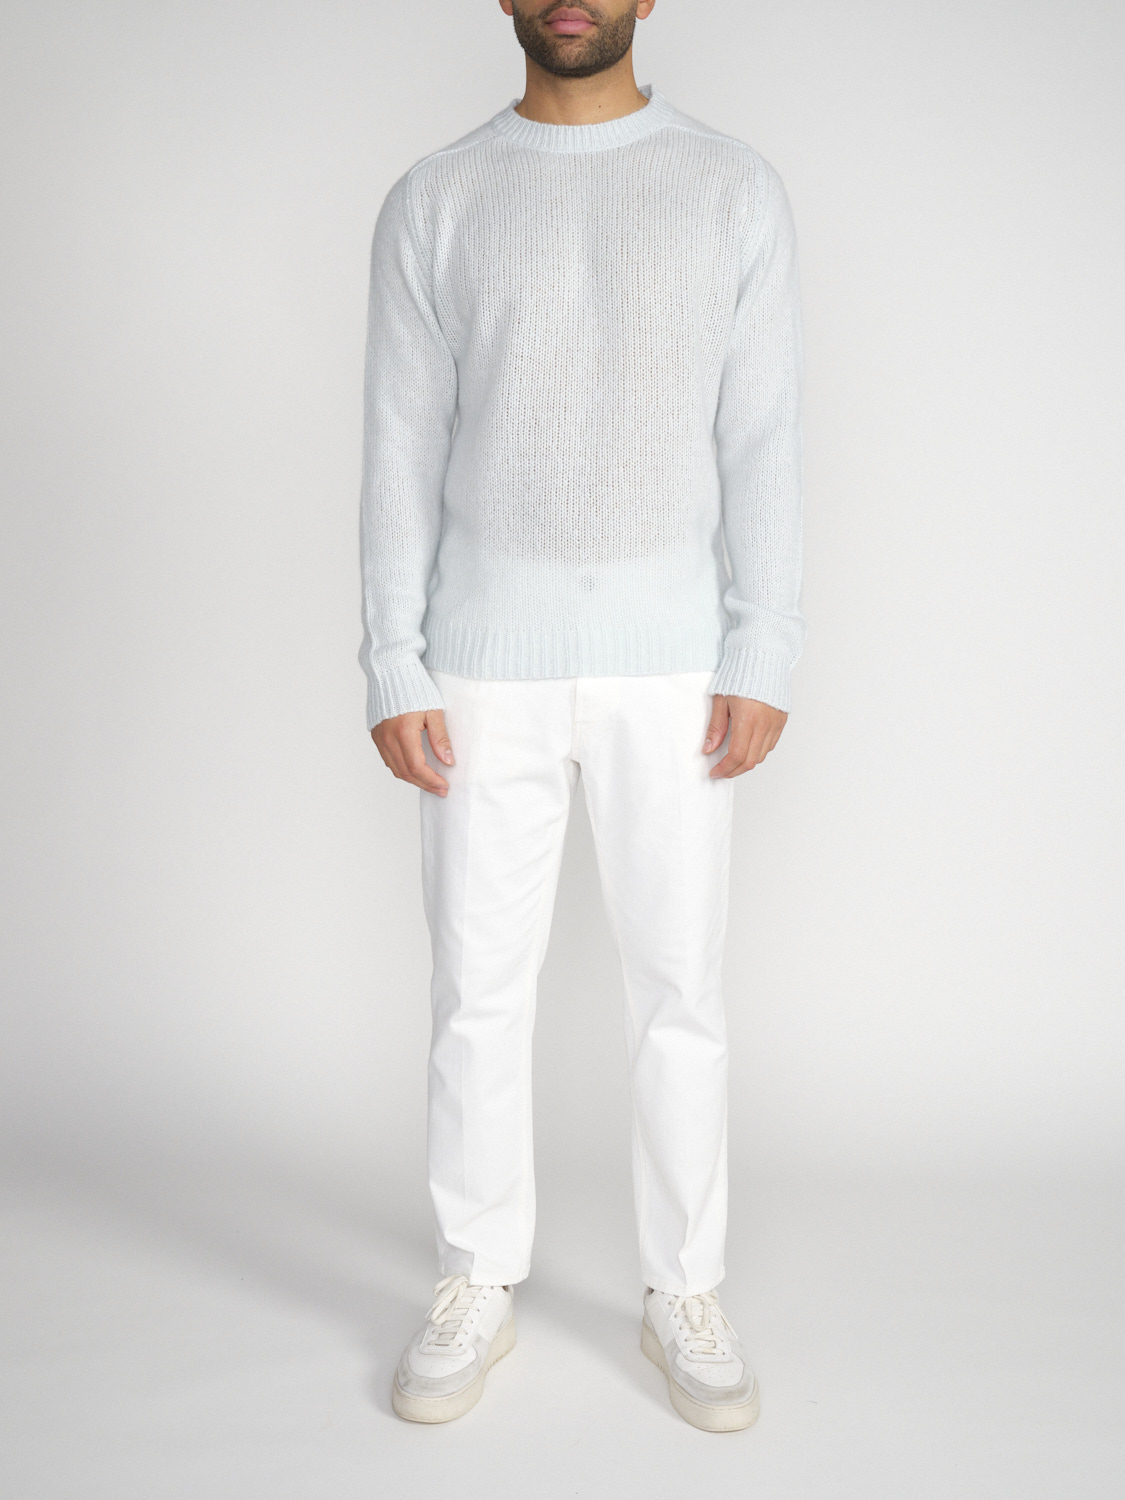 Stephan Boya Boya Leo - Lightweight knitted sweater in cashmere   mint S